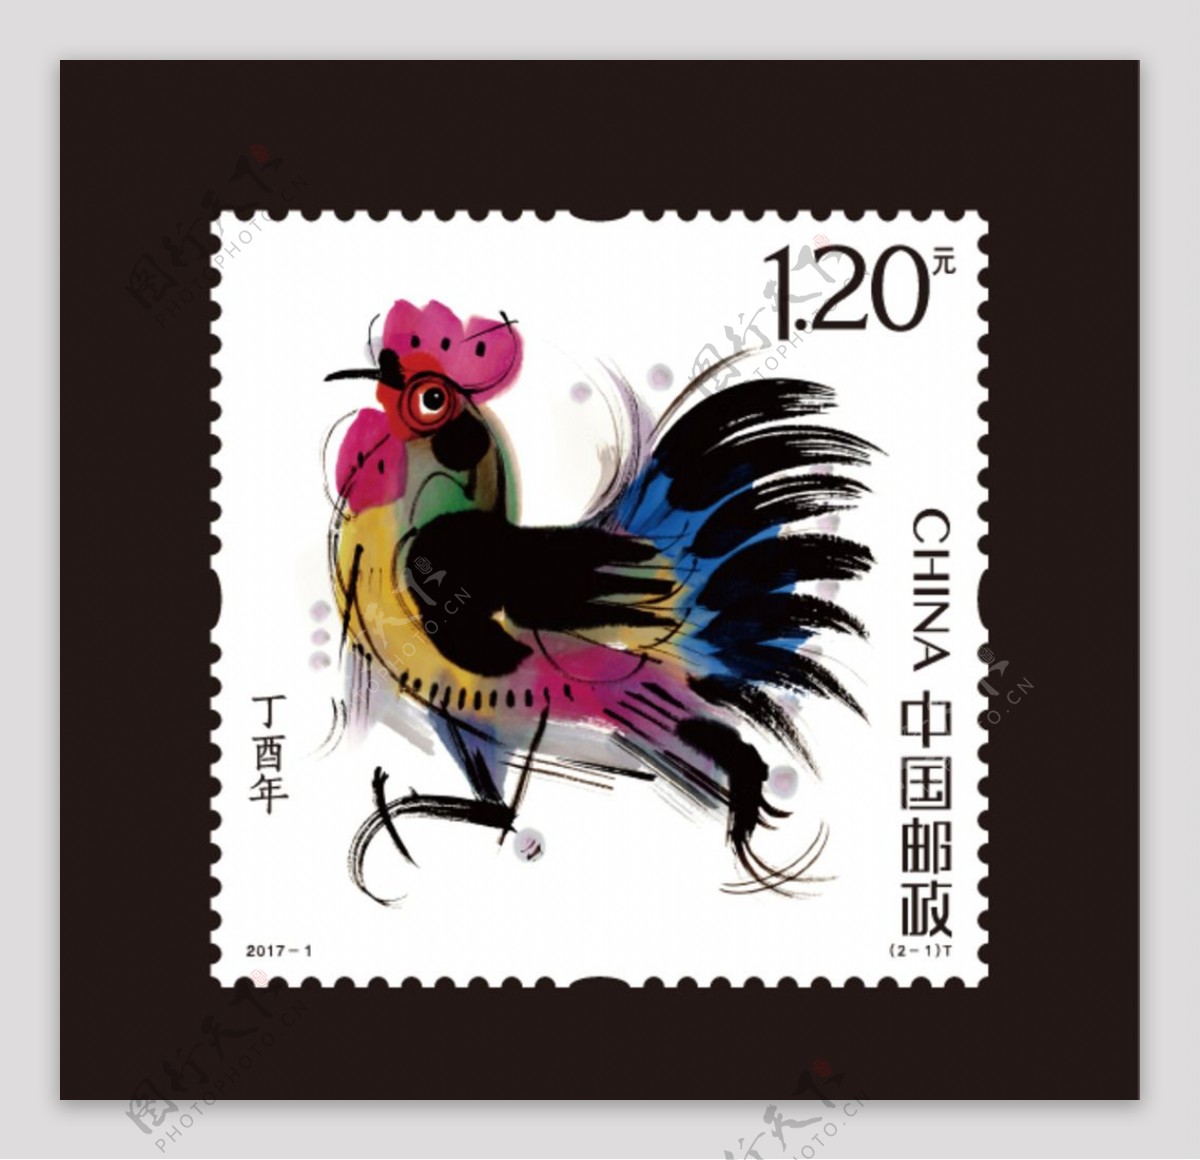 2017鸡年生肖邮票